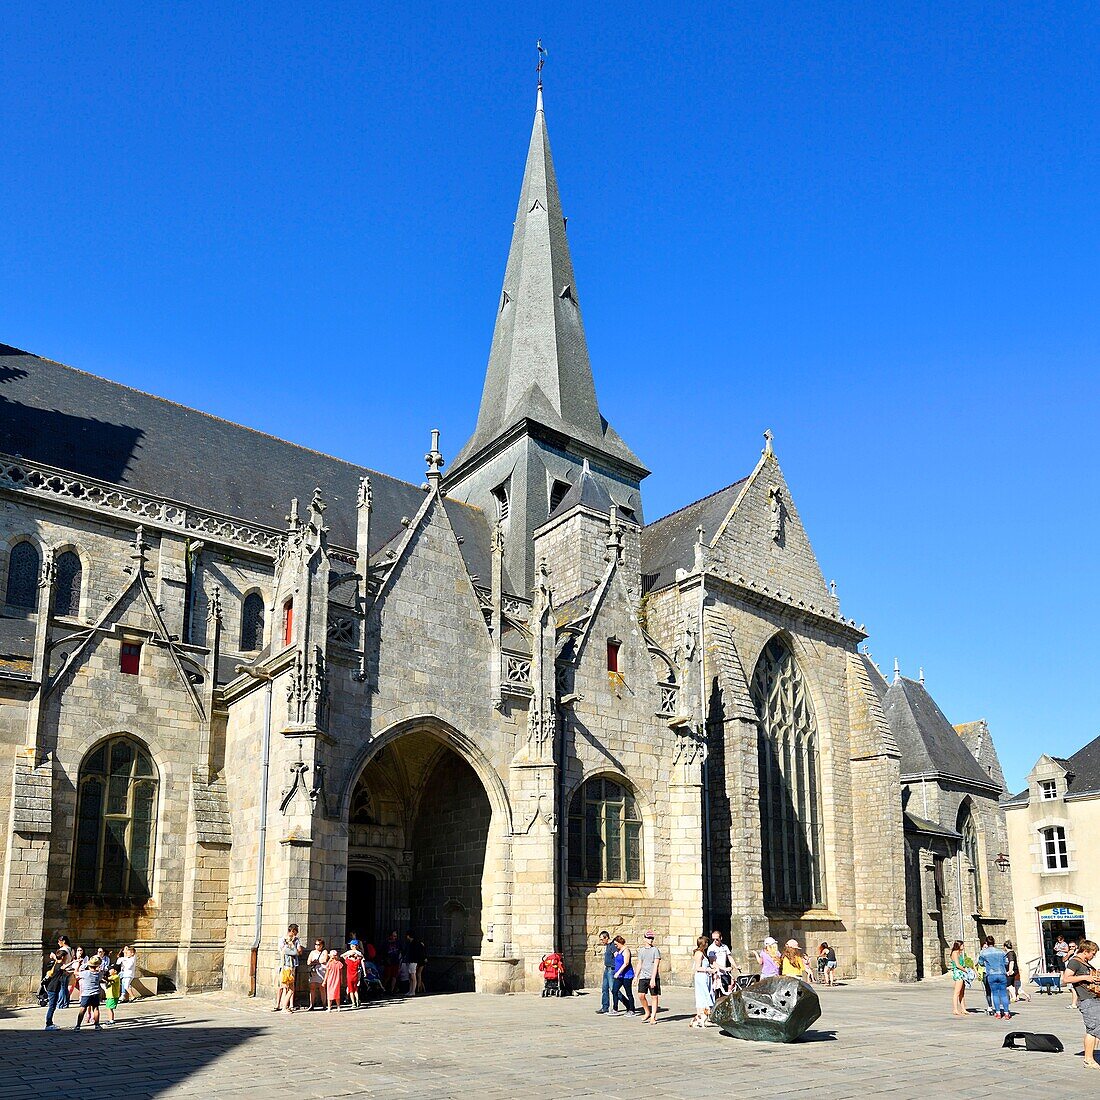 France, Loire Atlantique, Parc Naturel Regional de la Briere (Briere Natural Regional Park), Presqu'ile de Guerande (Guerande's Peninsula), Guerande, medieval city, Saint Aubin square, Collegiate church of Saint Aubin